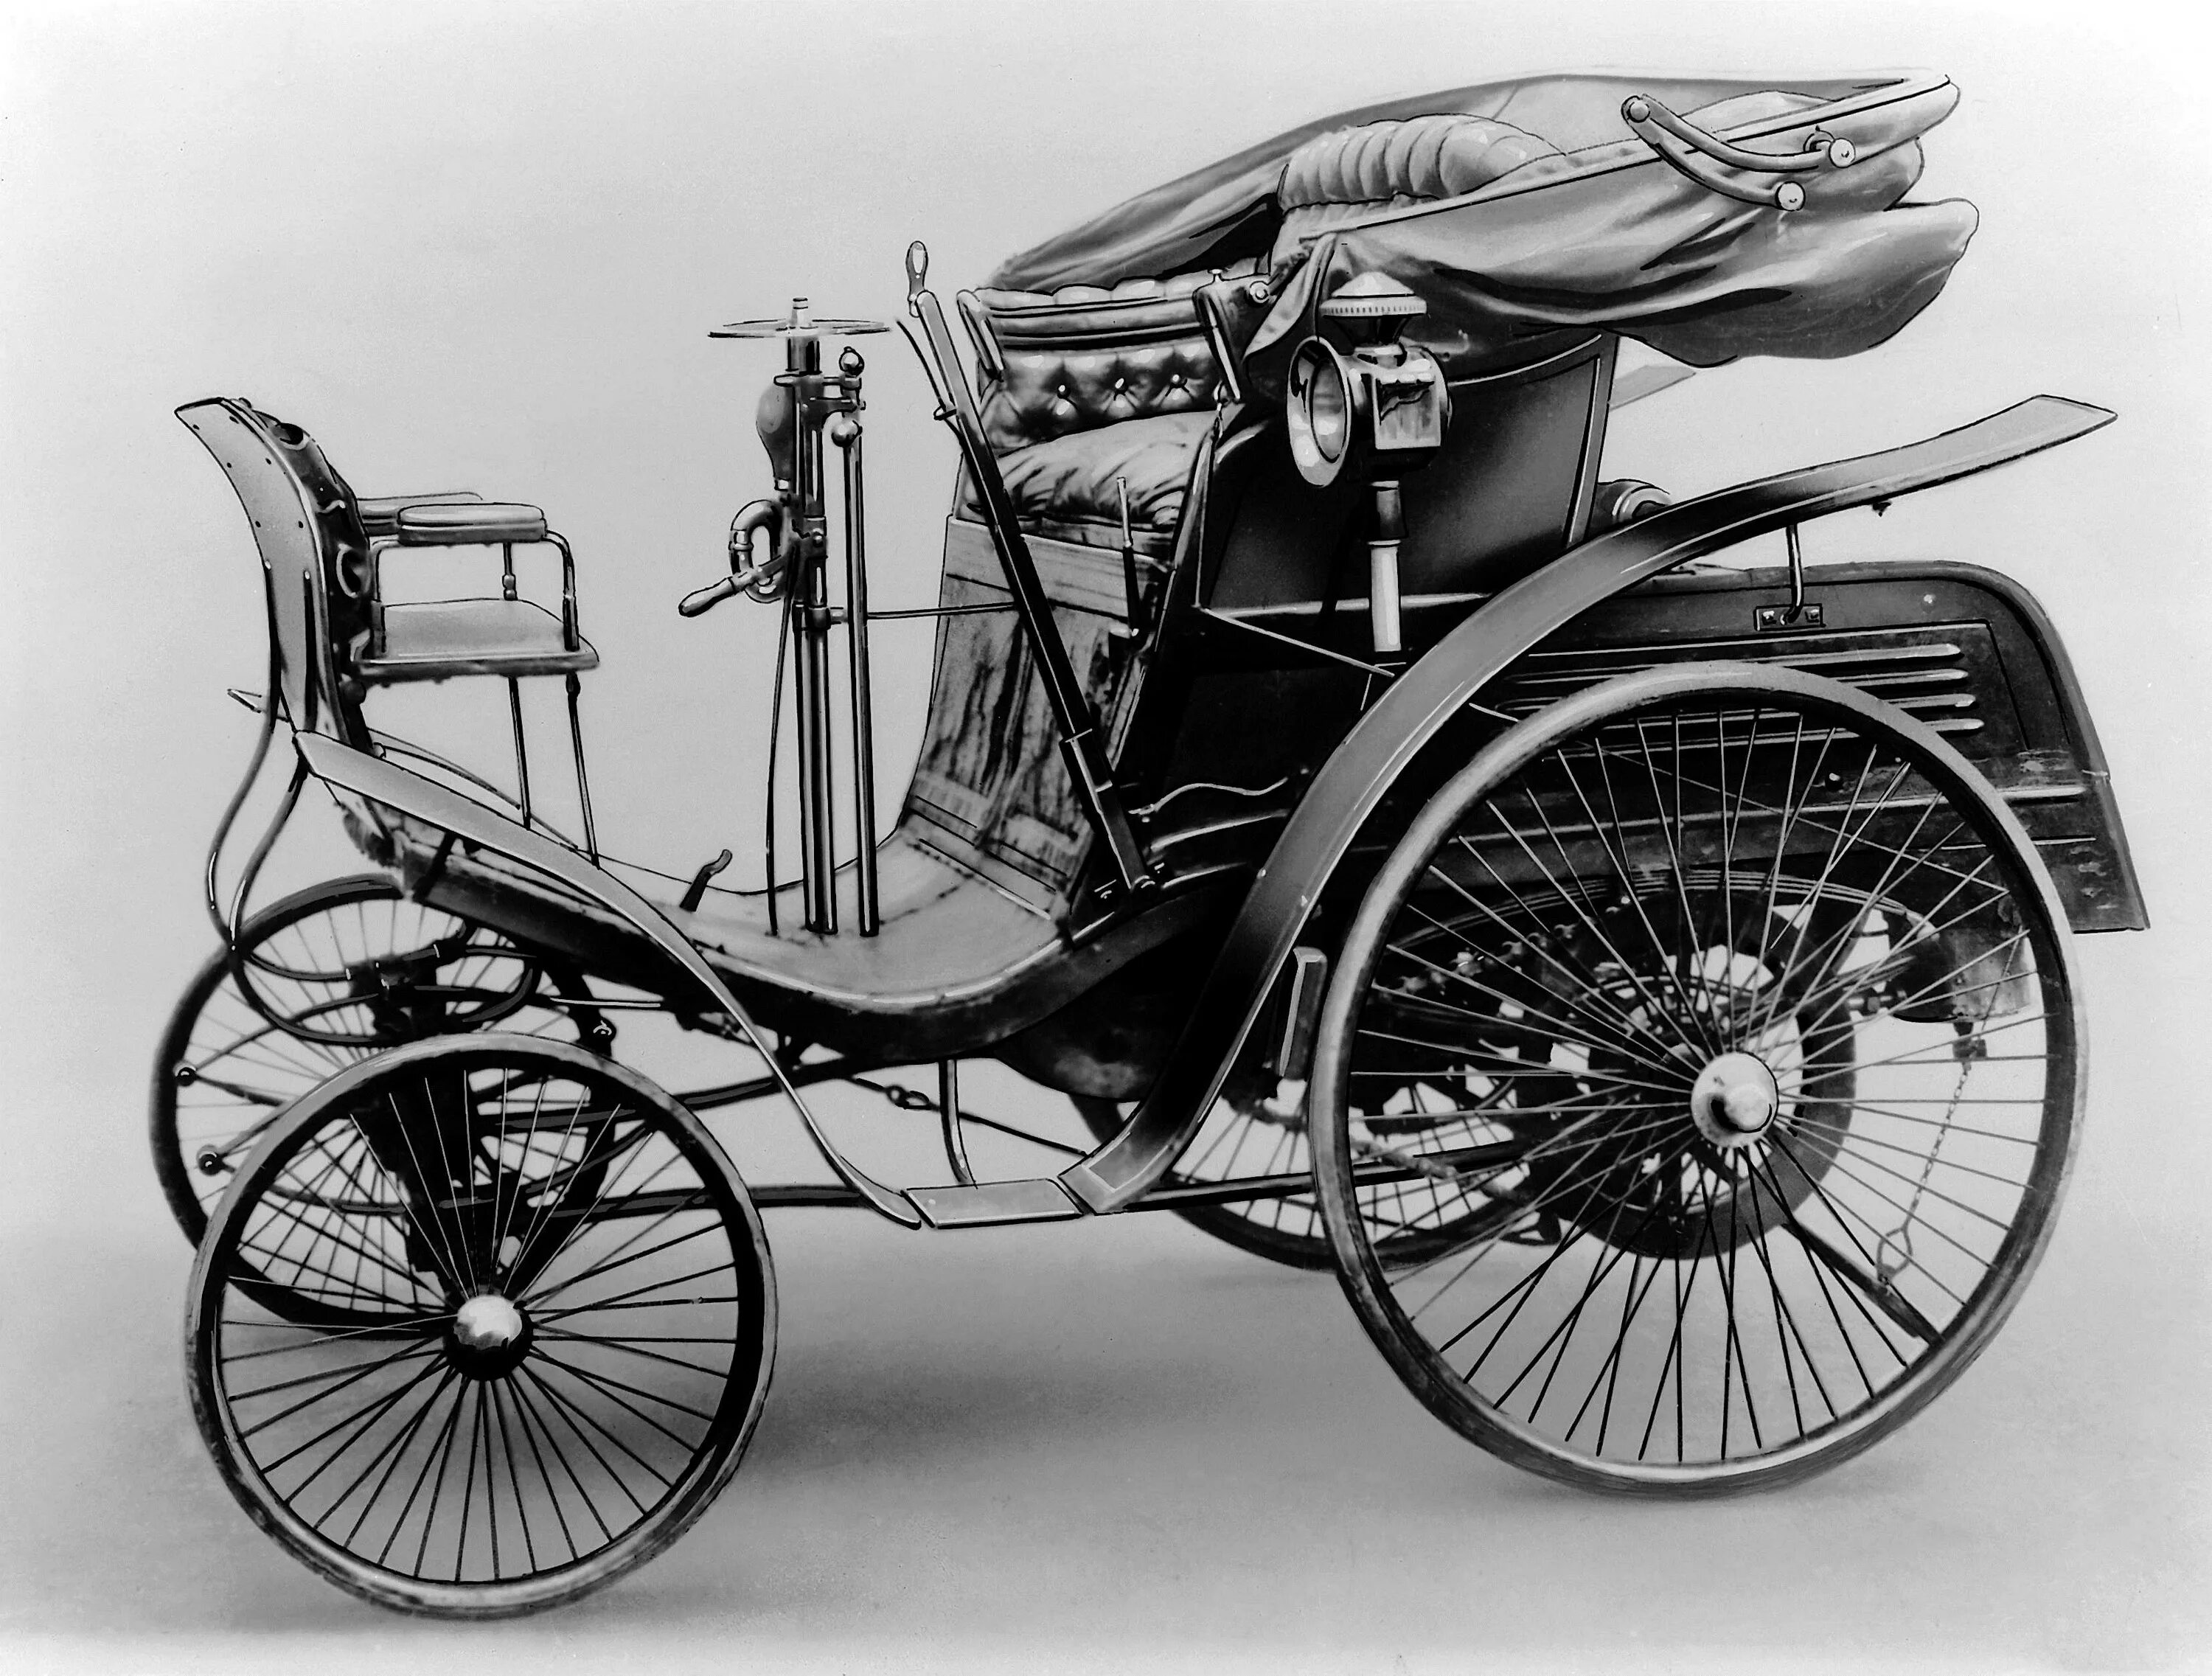 Первый автомобиль бенца. “Benz velo” 1894 года с клаксоном. Первый Мерседес Бенц 1886.